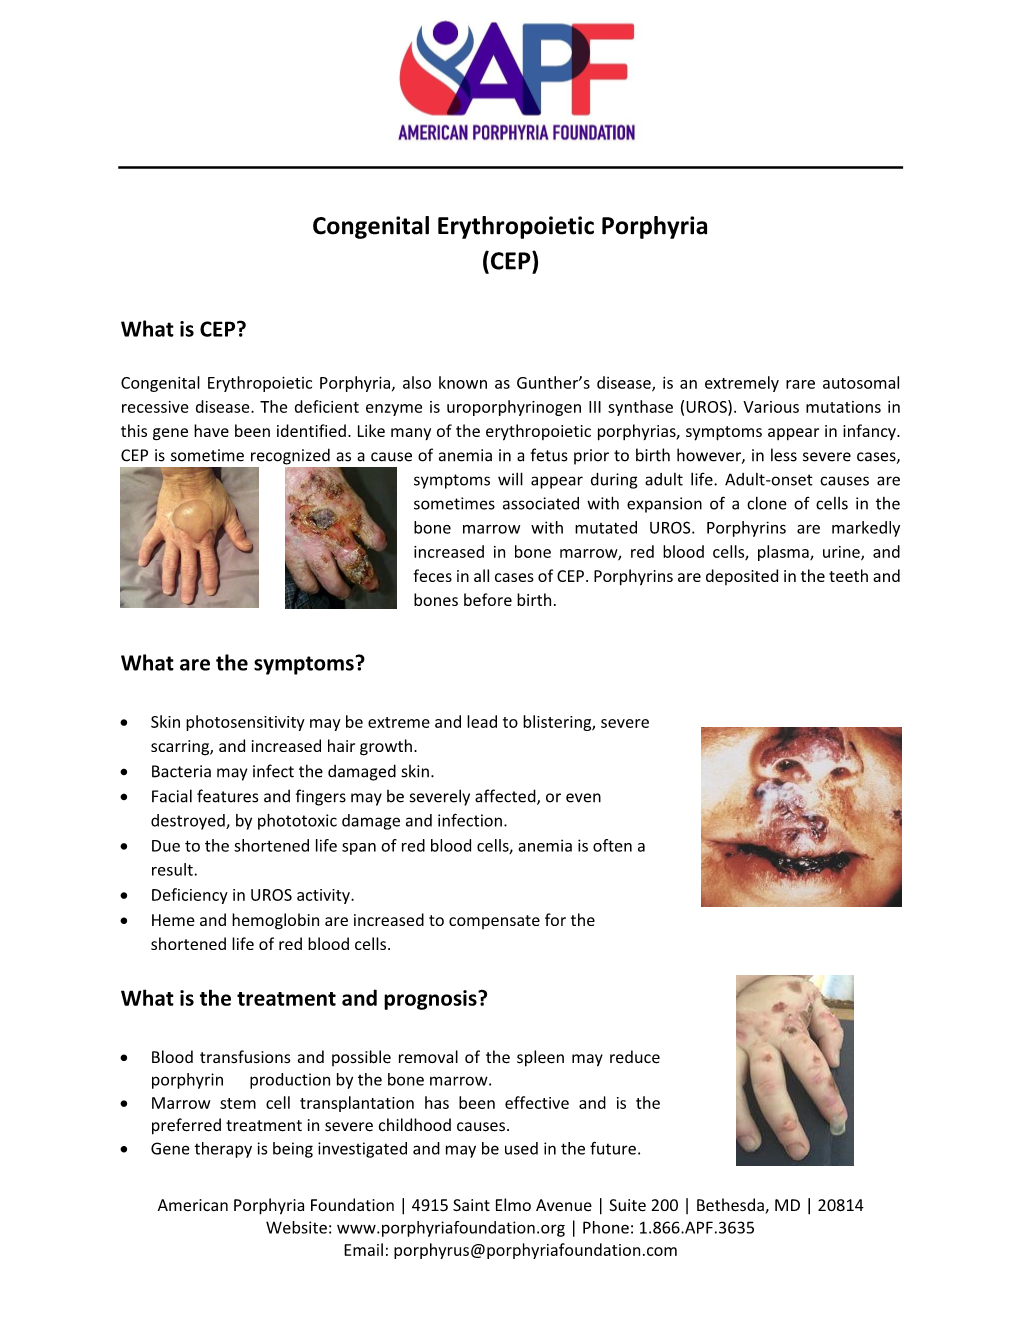 Congenital Erythropoietic Porphyria (CEP)